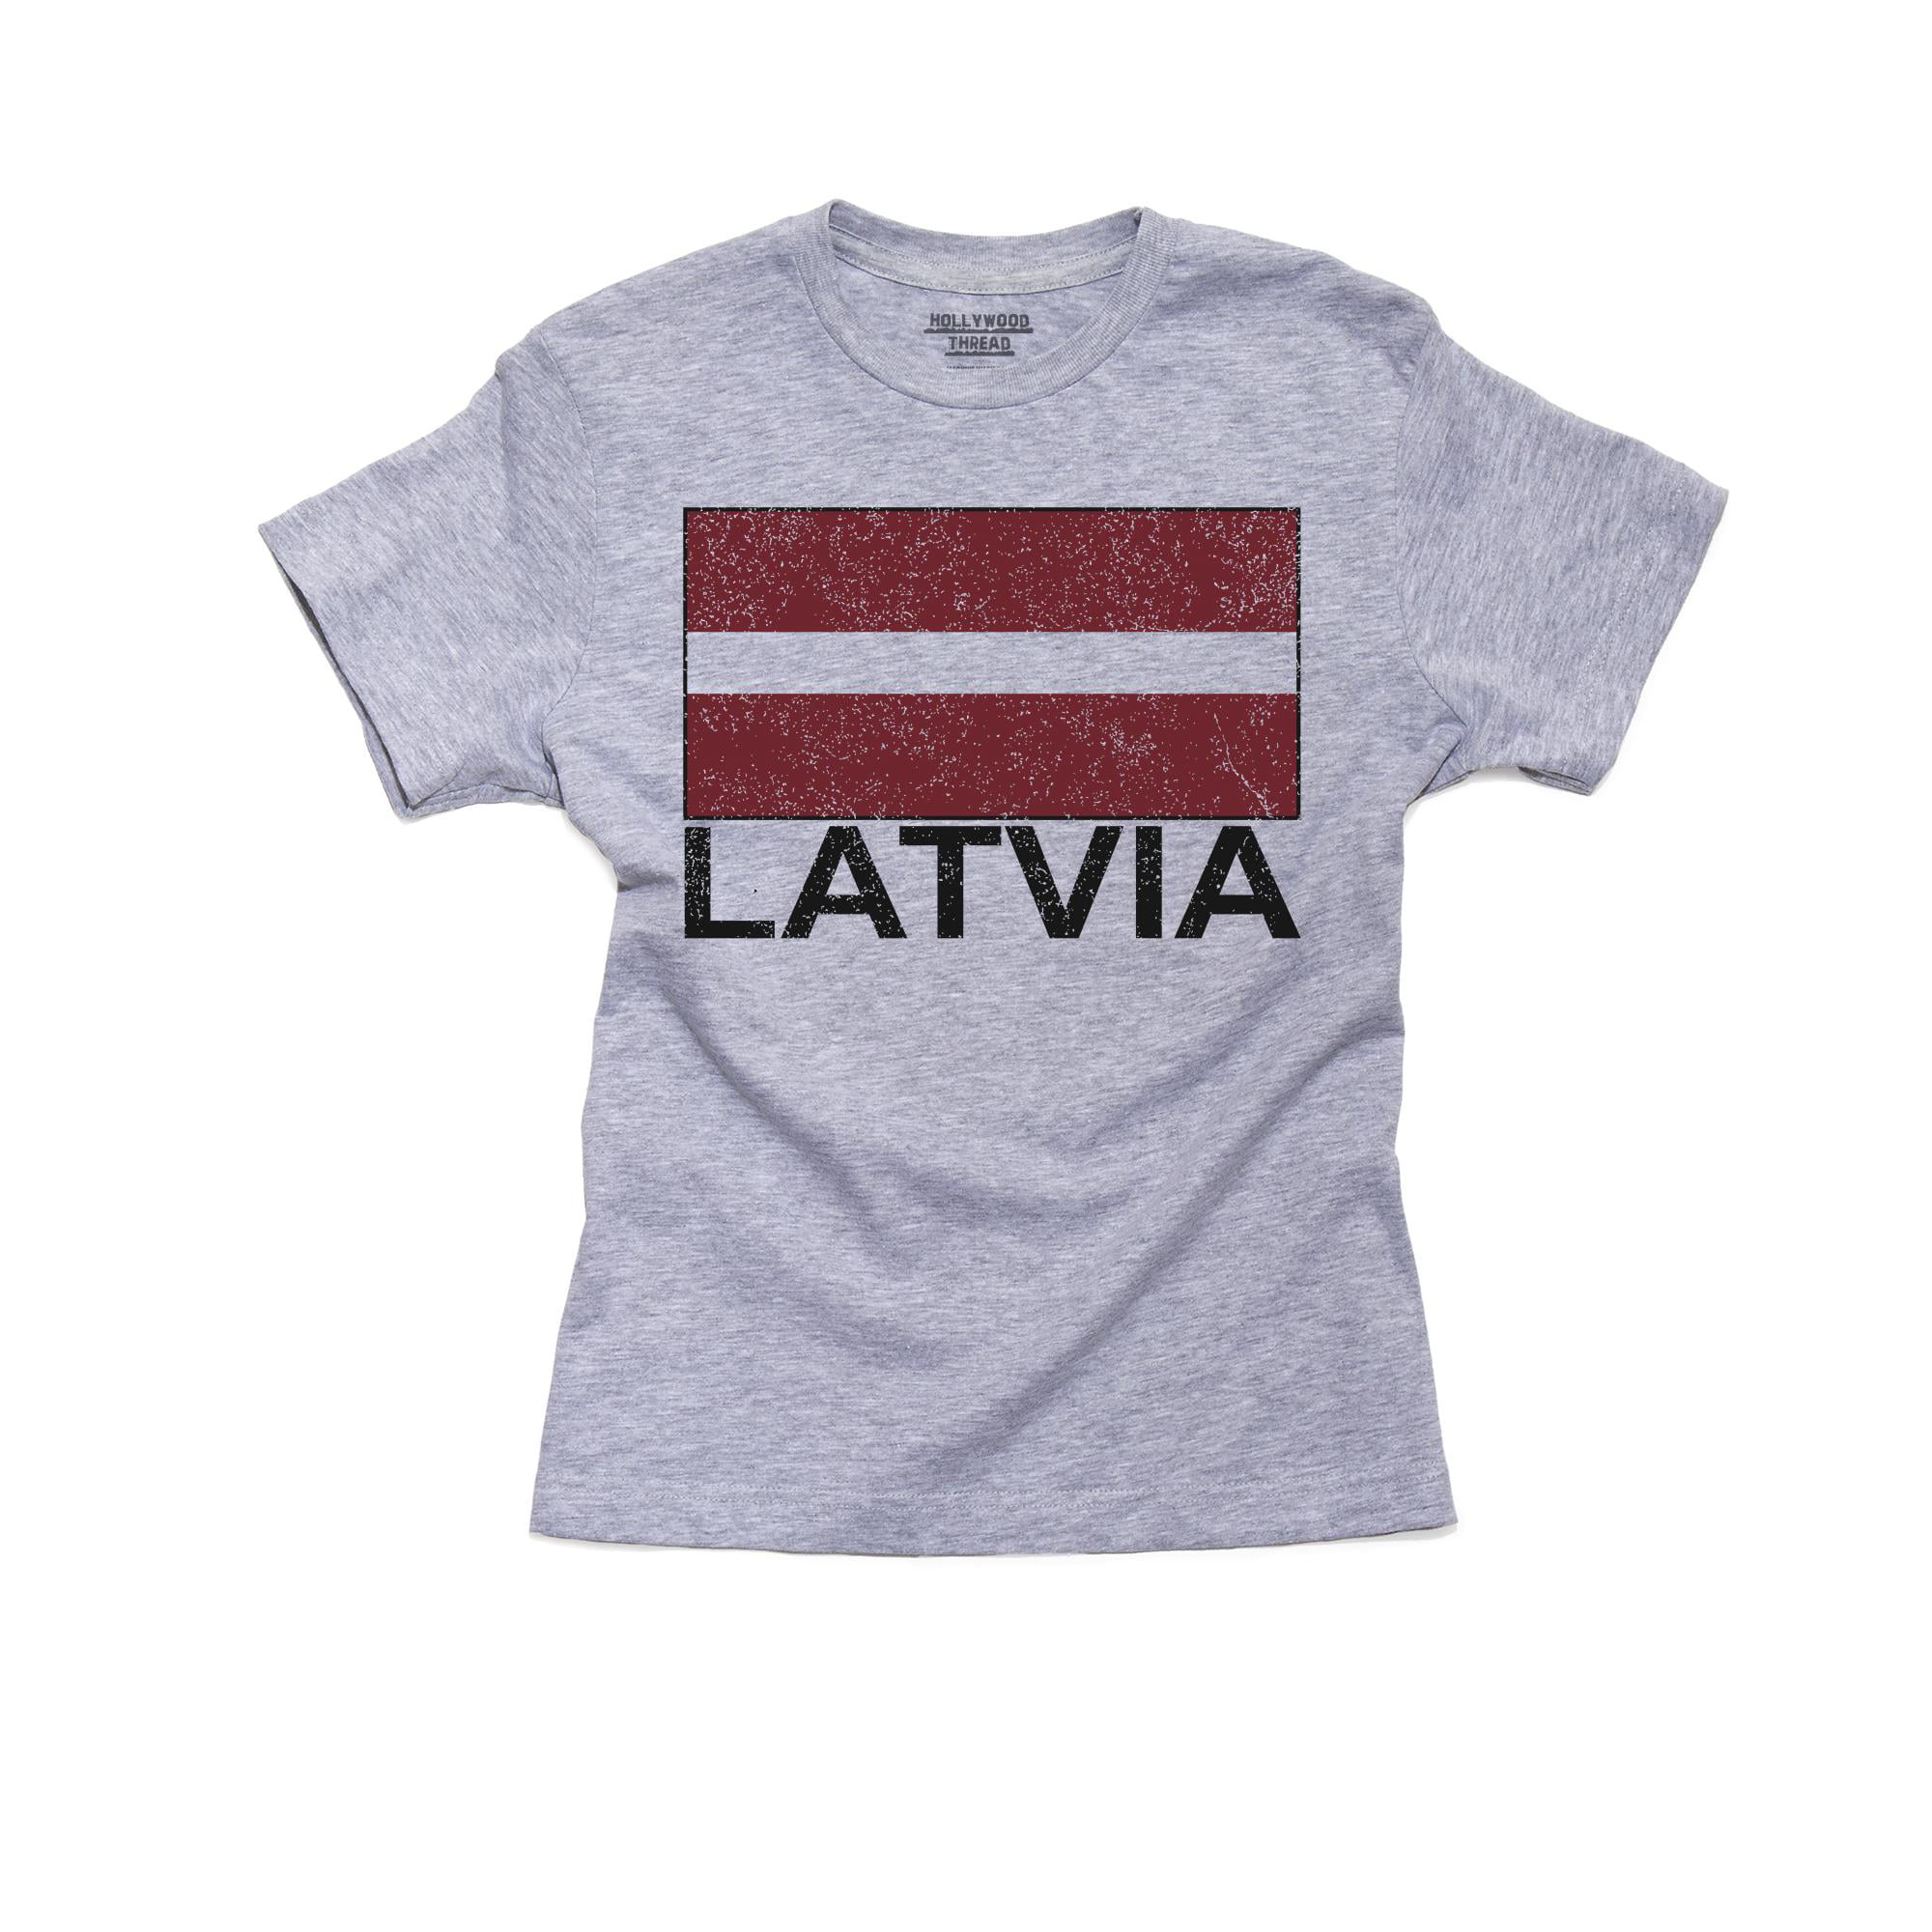 LATVIA Patriotic Retro Strip T-Shirt *Choice Of MENS LADIES KIDS BABY GROW* 